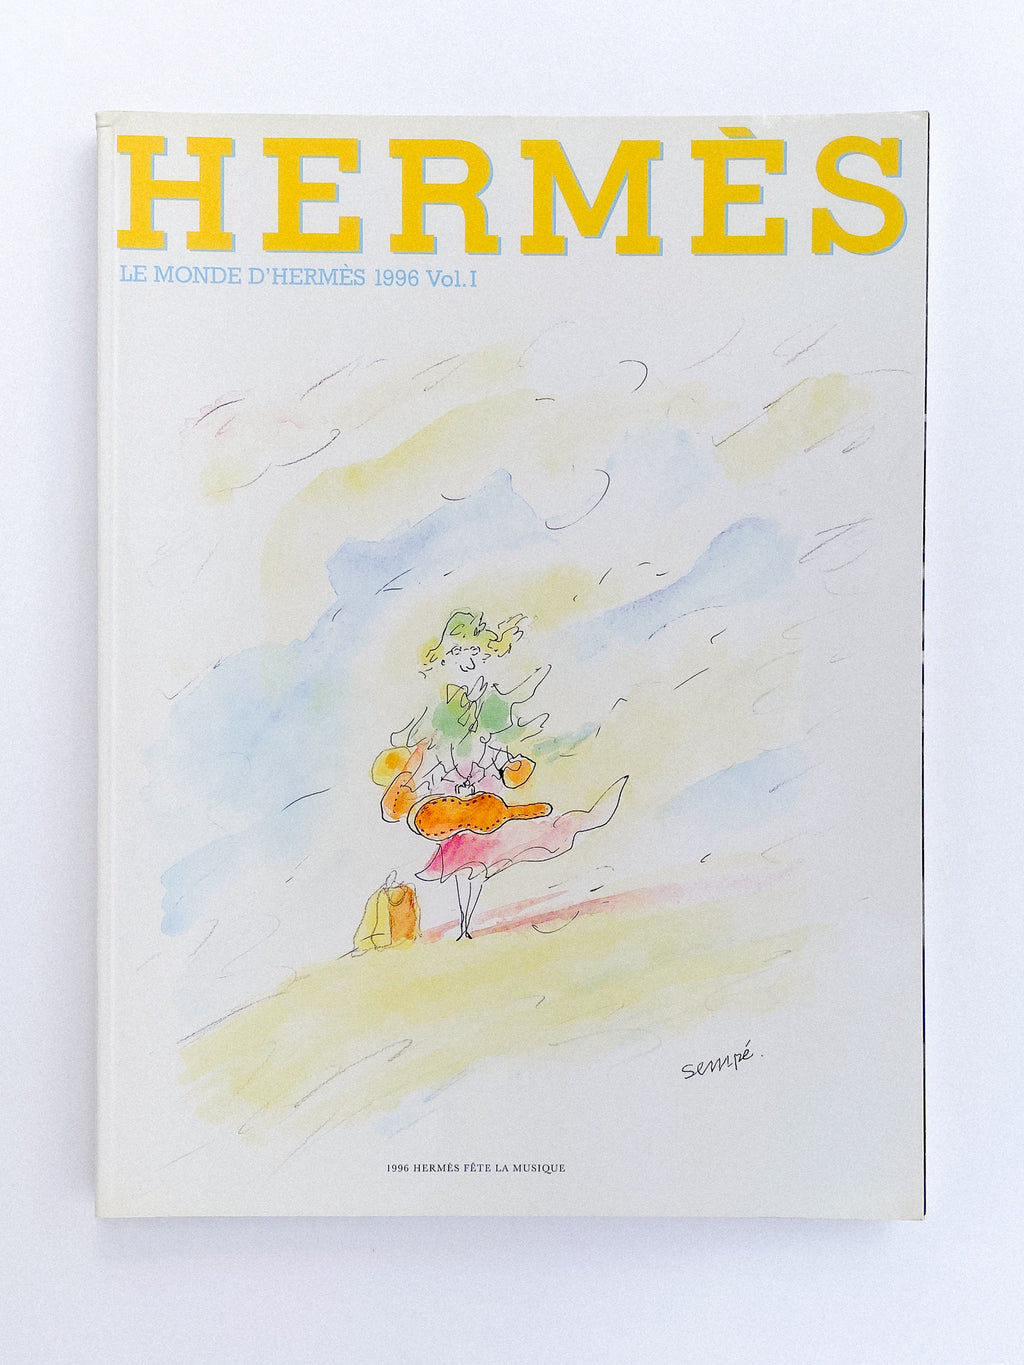 Le Monde d'Hermès N° 28, 1996 Vol. I